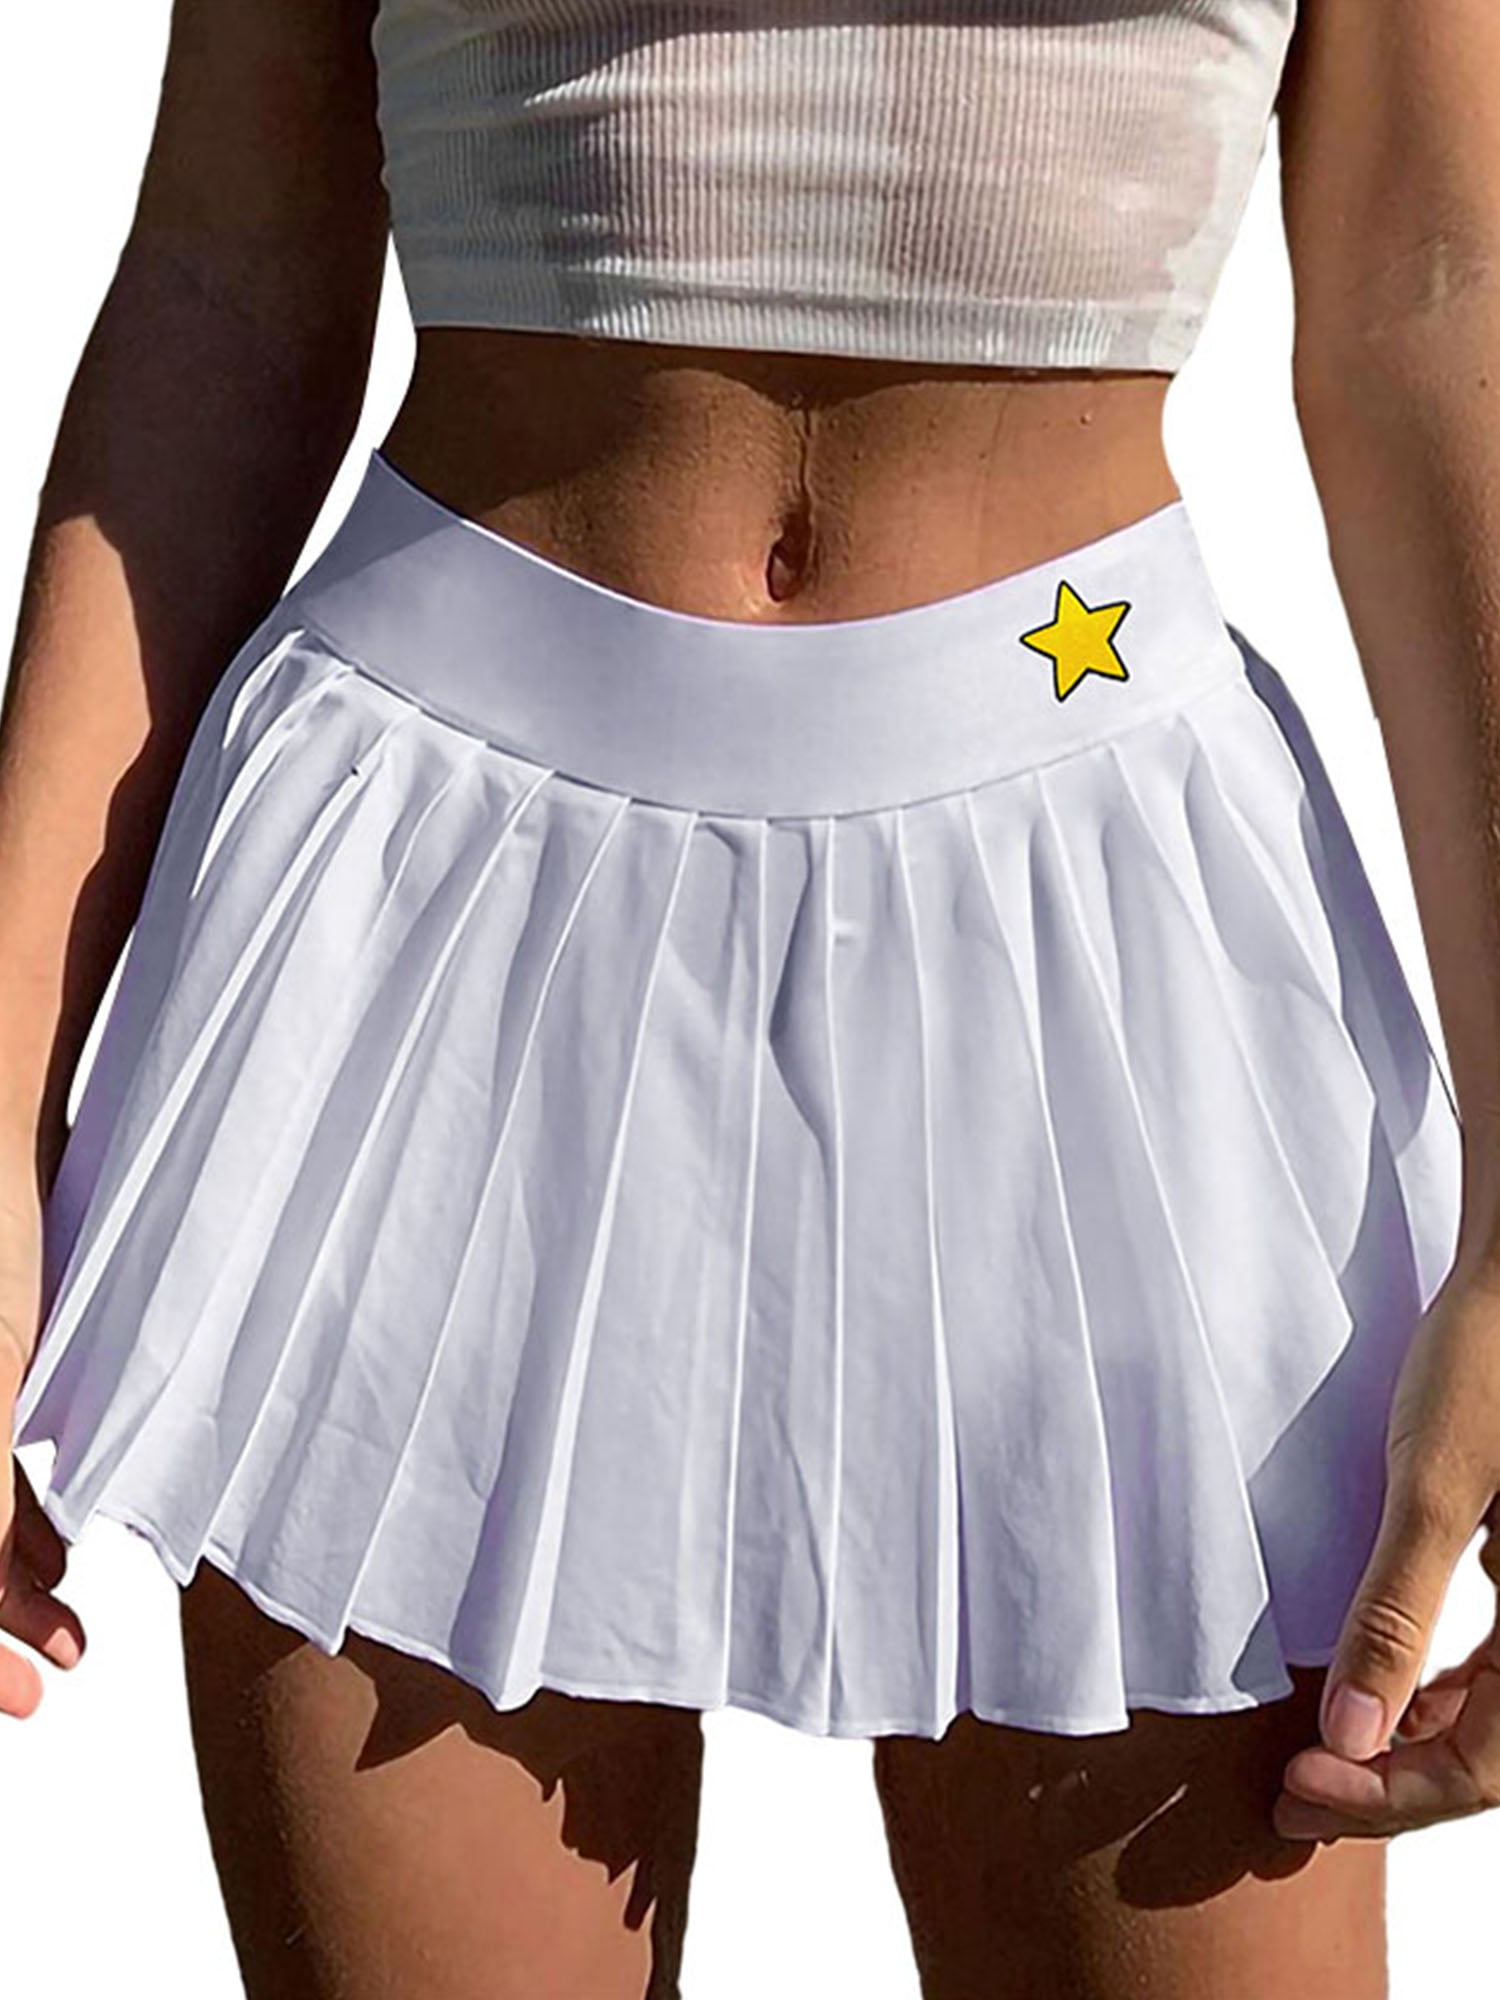 Enormous Seasoned Ass In A Tennis Skirt!